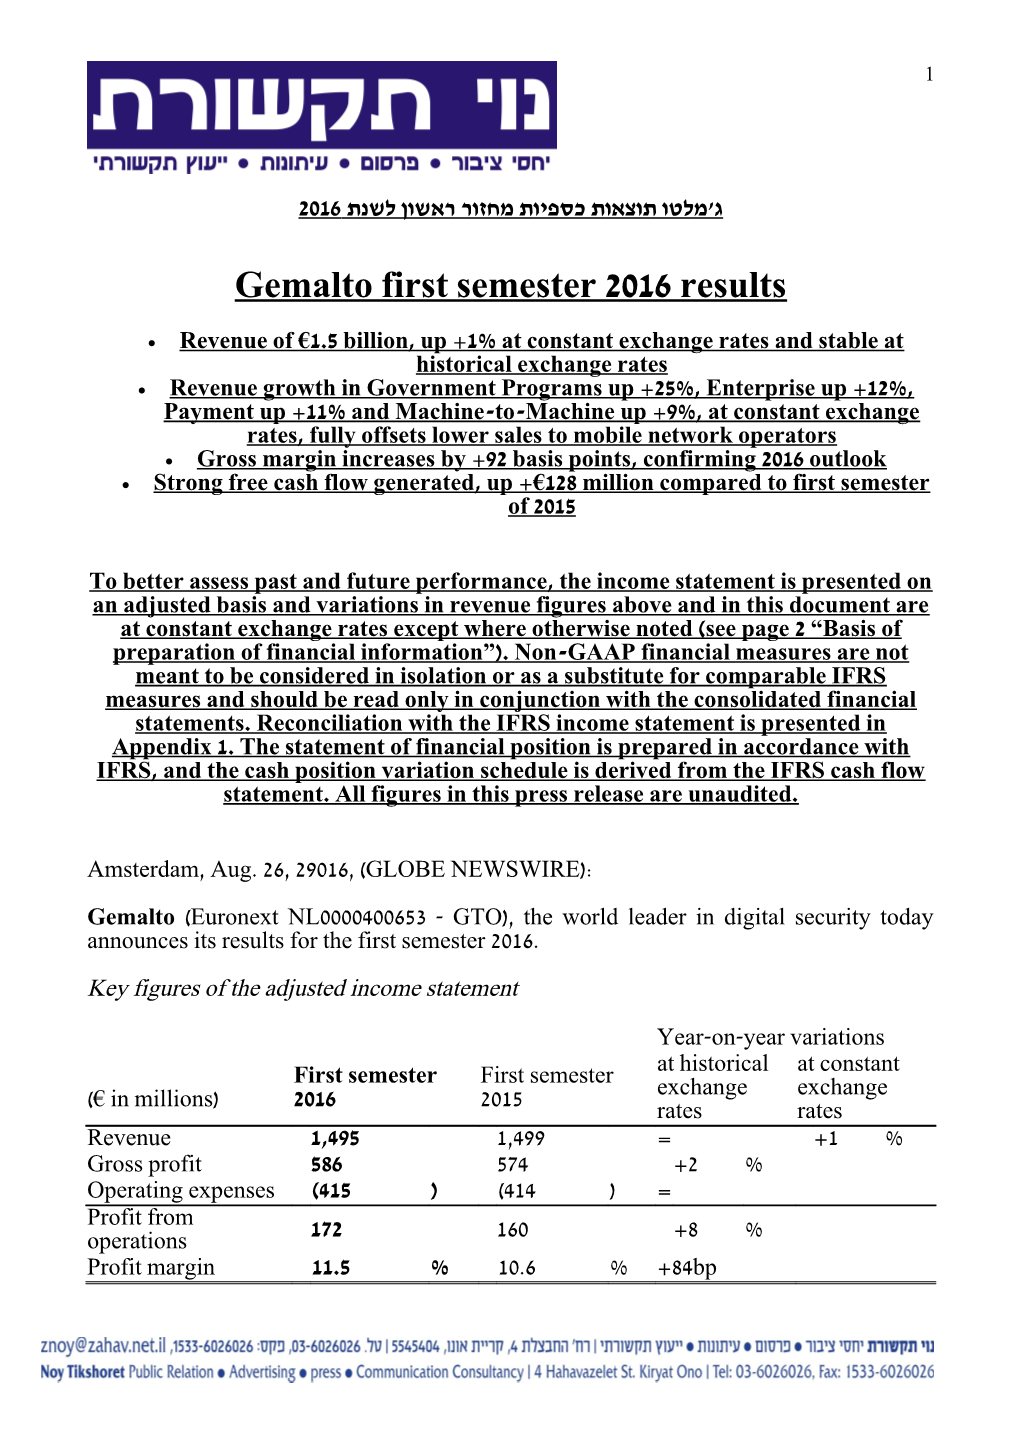 Gemalto First Semester 2016 Results